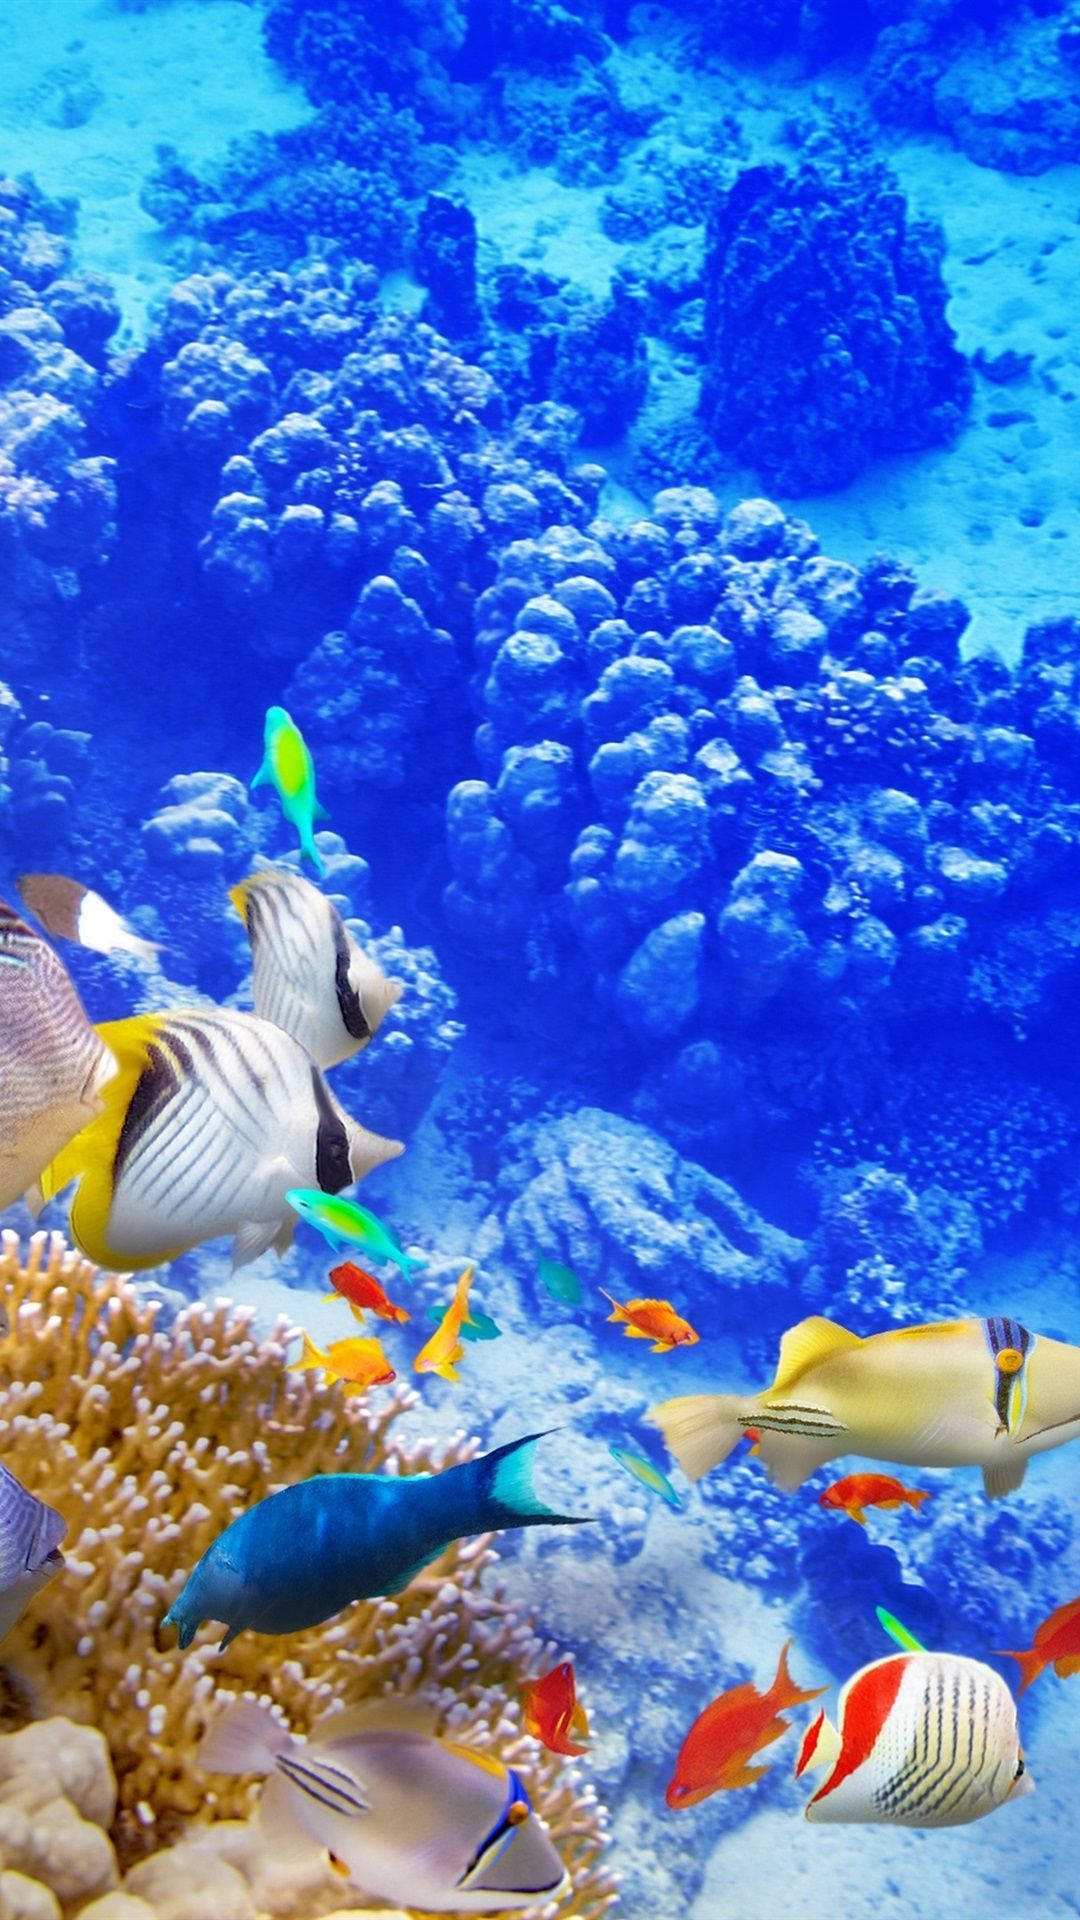 Unarrecife De Coral Colorido Fondo de pantalla